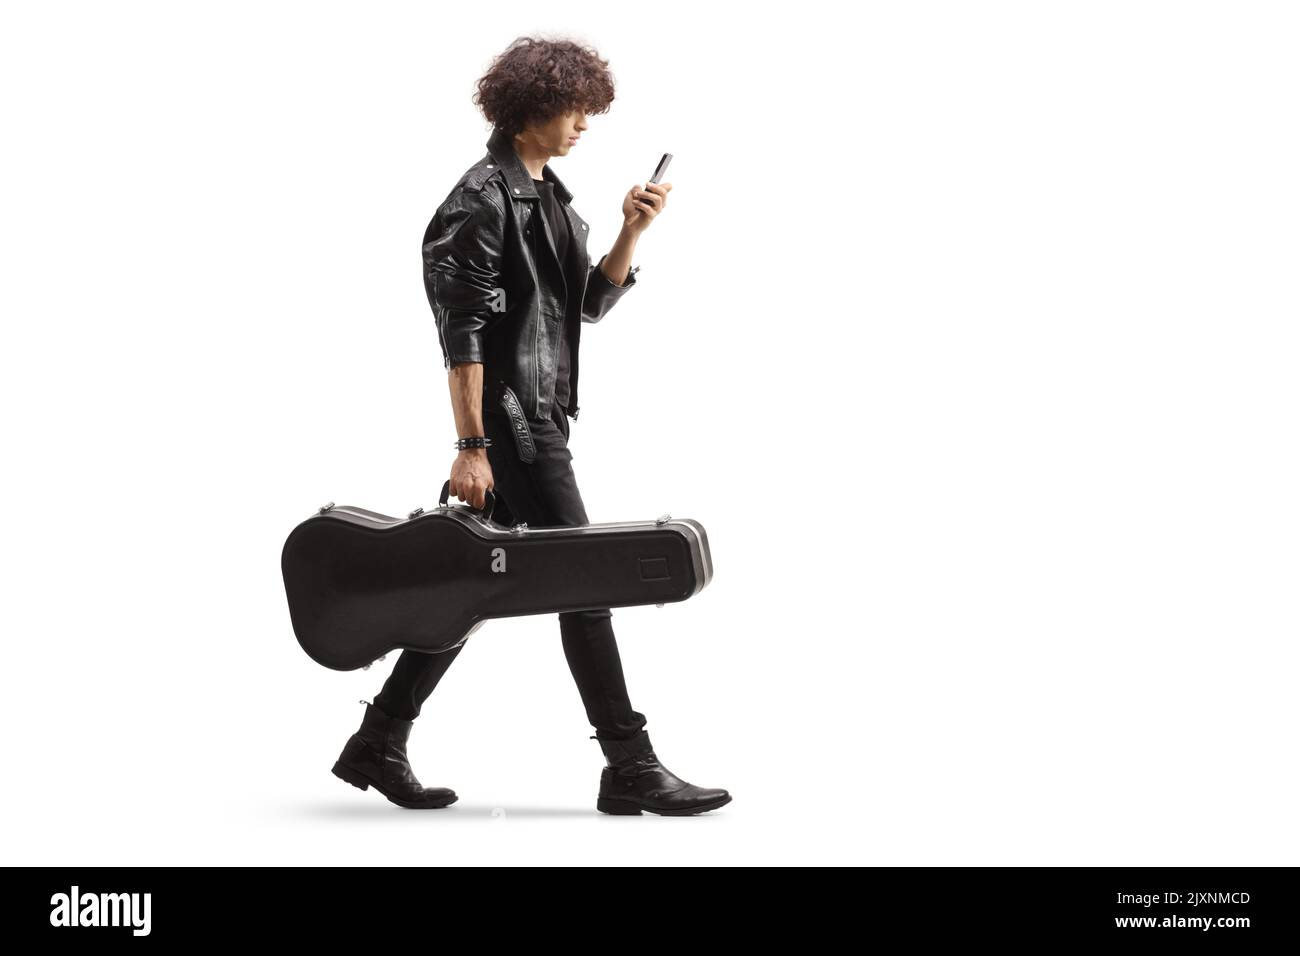 Profilo completo di un giovane musicista che porta una custodia per chitarra e utilizza uno smartphone isolato su sfondo bianco Foto Stock